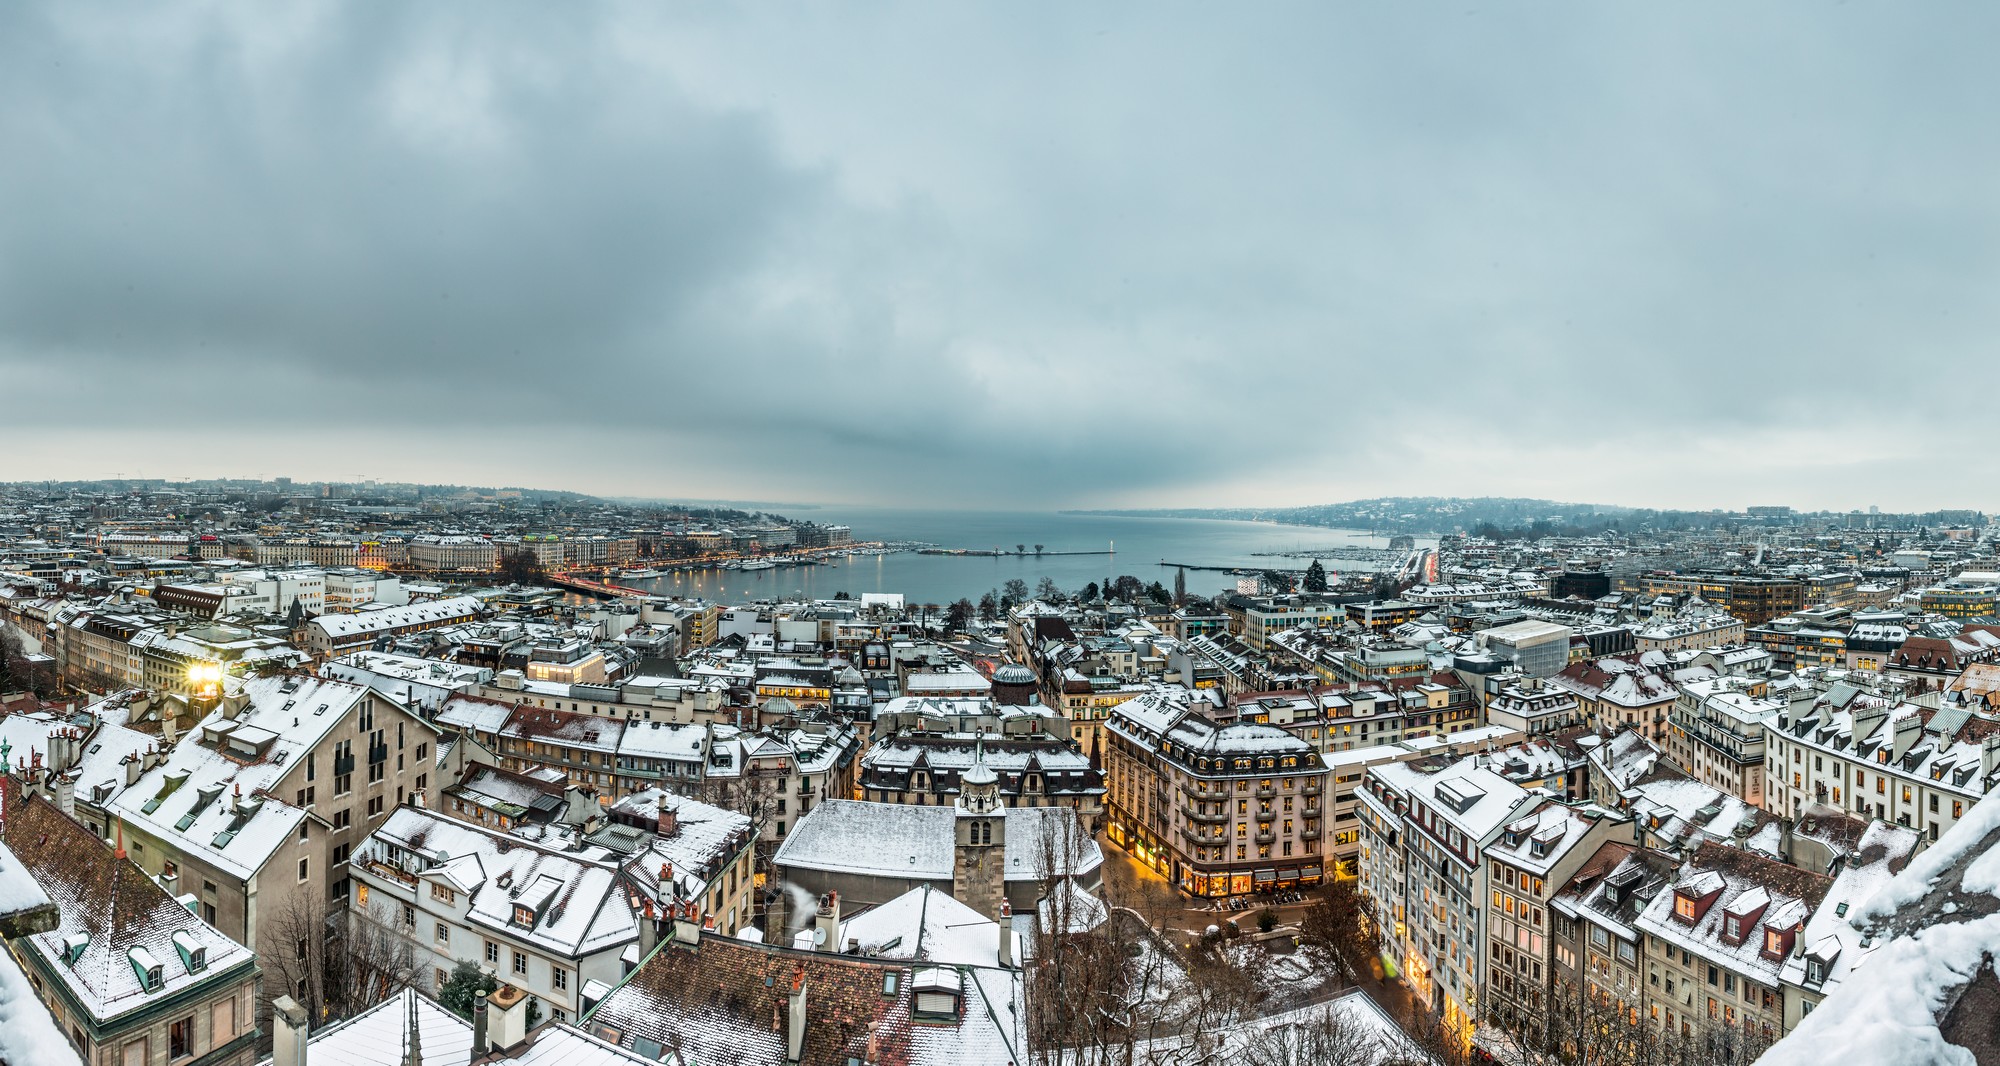 冬季的日内瓦 - 照片©瑞士旅游局 - swiss-image.ch/Jan Geerk